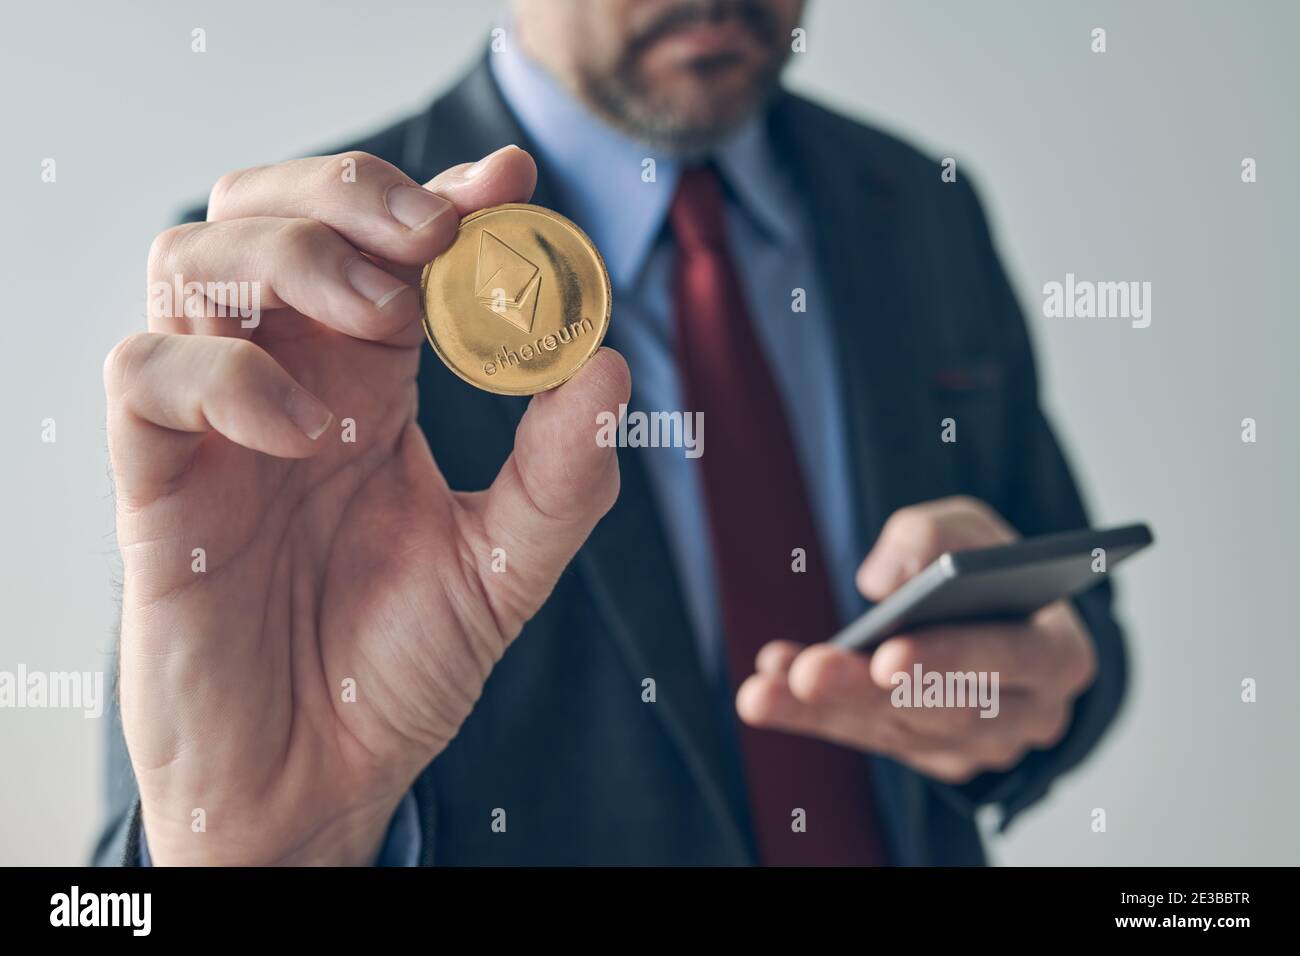 Homme d'affaires utilisant un smartphone pour échanger l'image conceptuelle d'un portefeuille électronique mobile numérique à crypto-monnaie Ethereum avec une attention sélective Banque D'Images